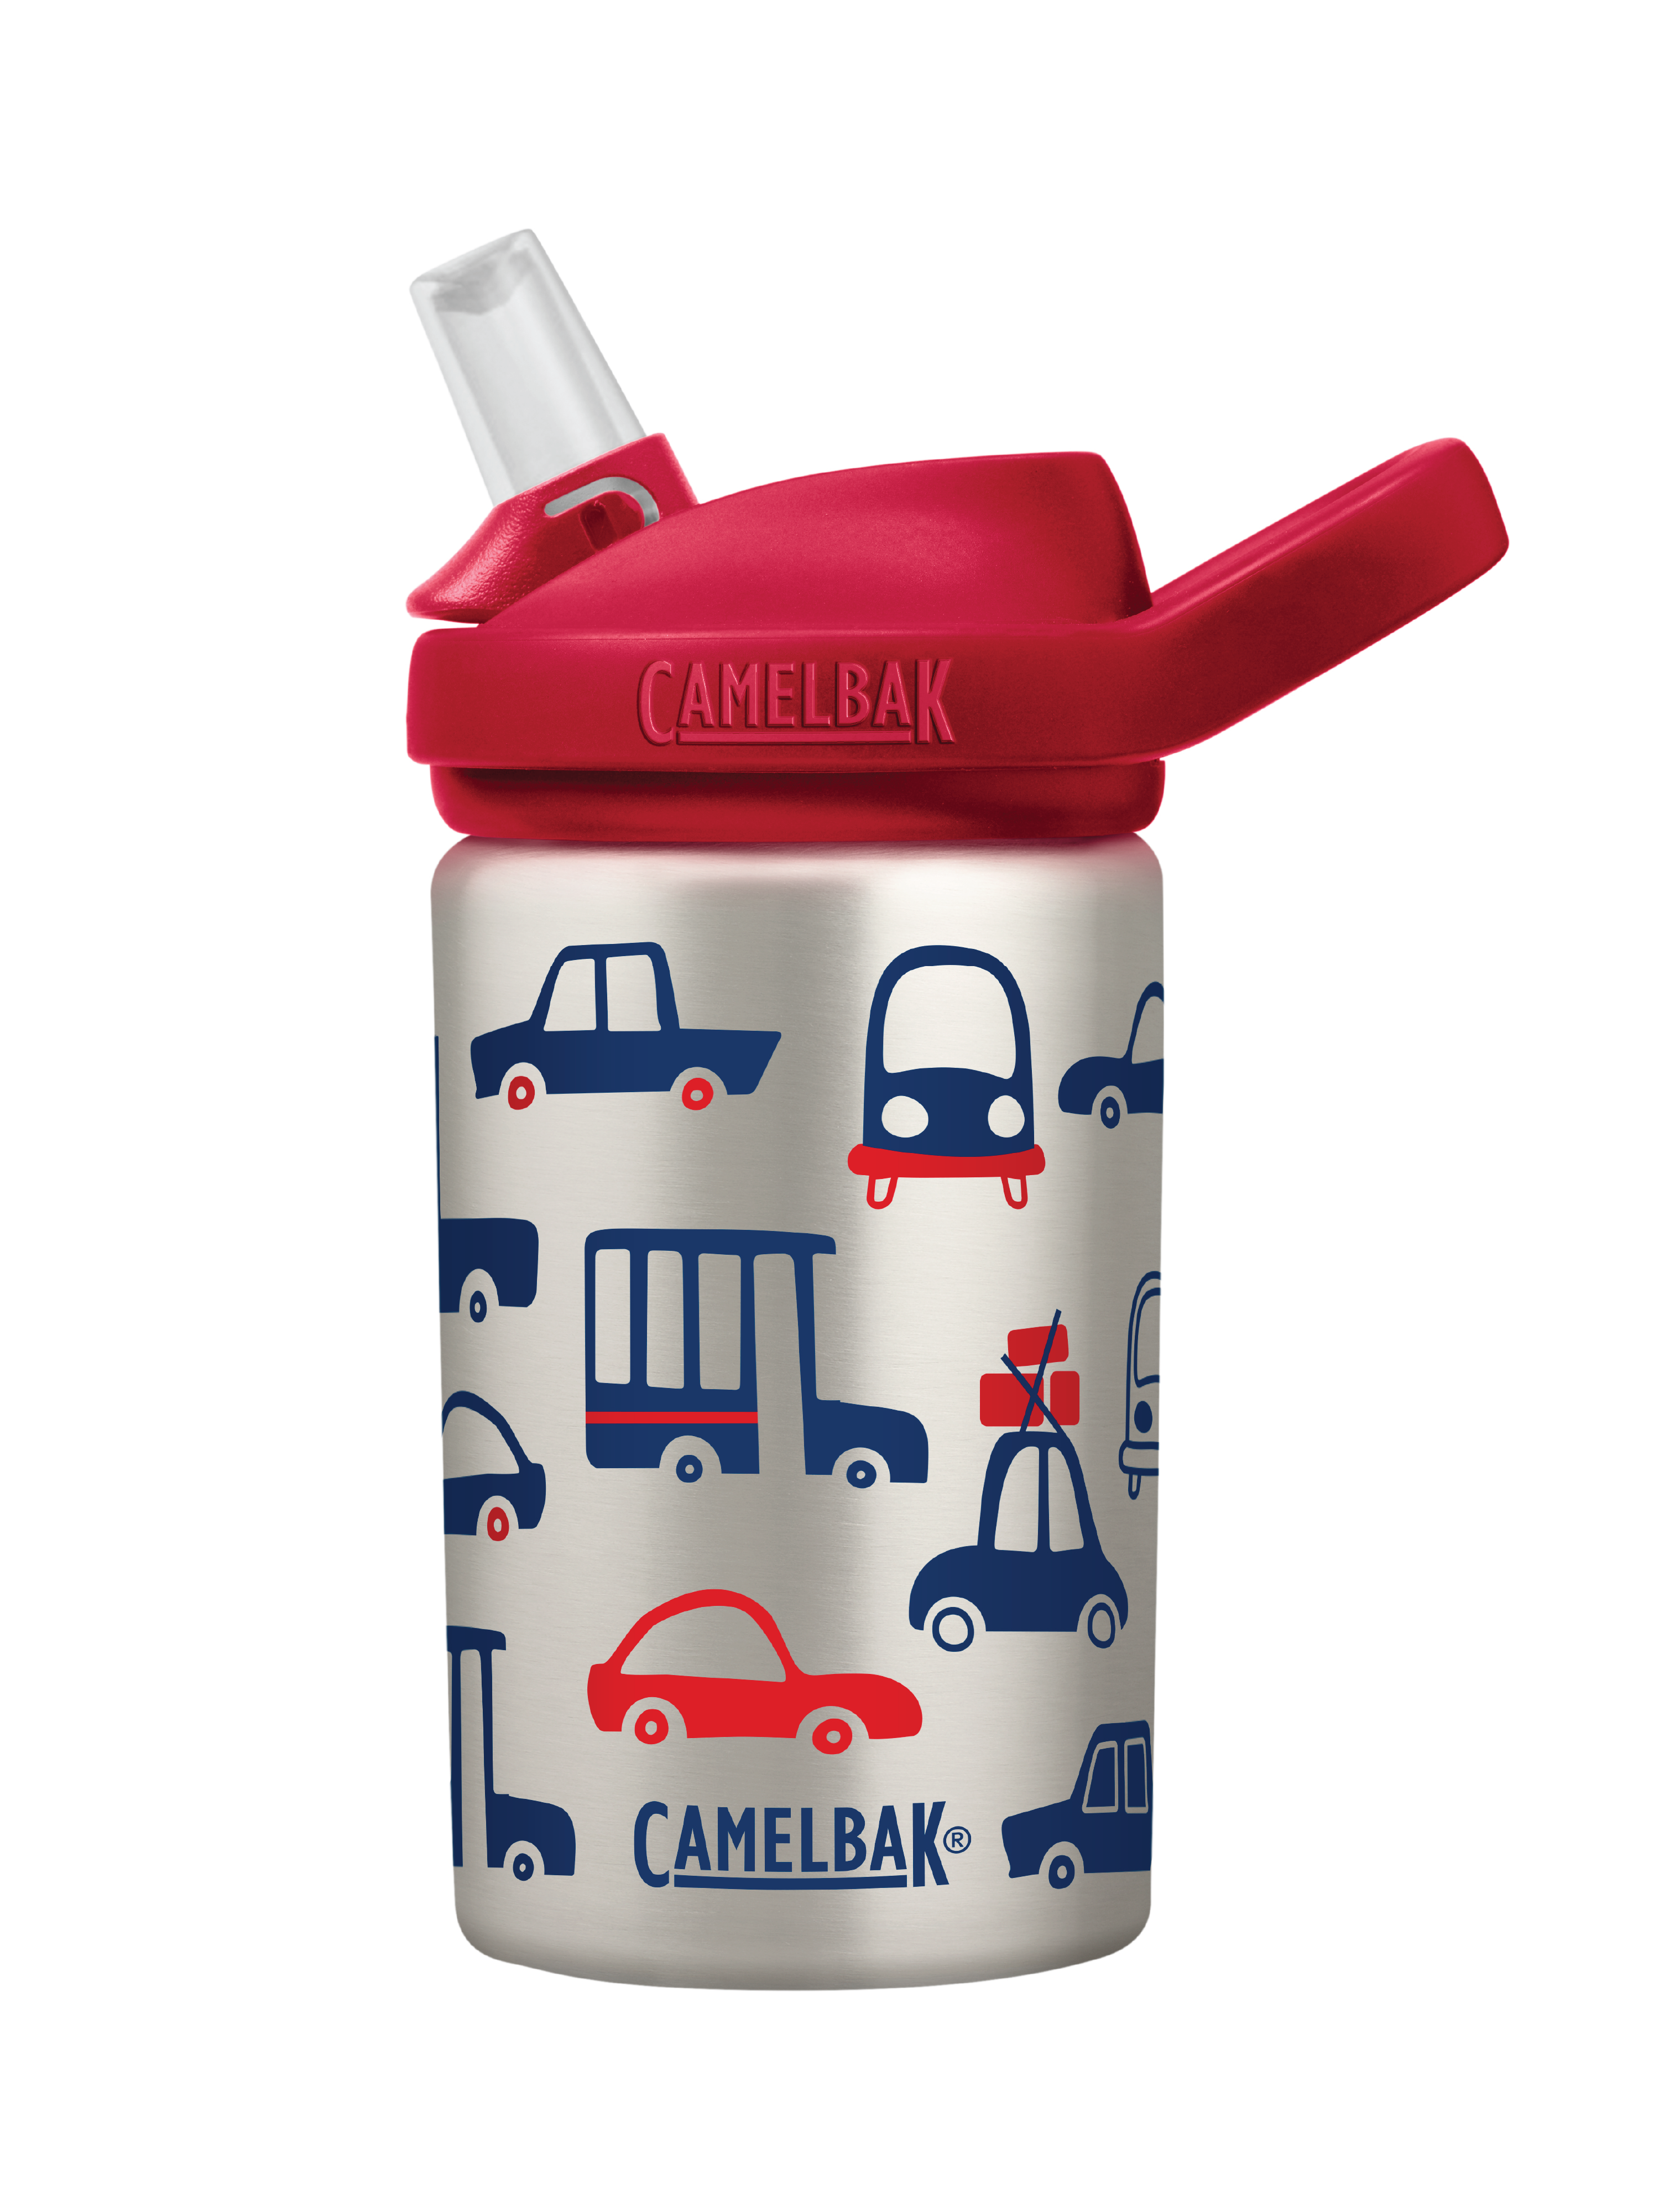 Camelbak Drikkeflaske Eddy+ Kids Singel SST 0,4 liter, Biler & lastebiler, 1 stk.